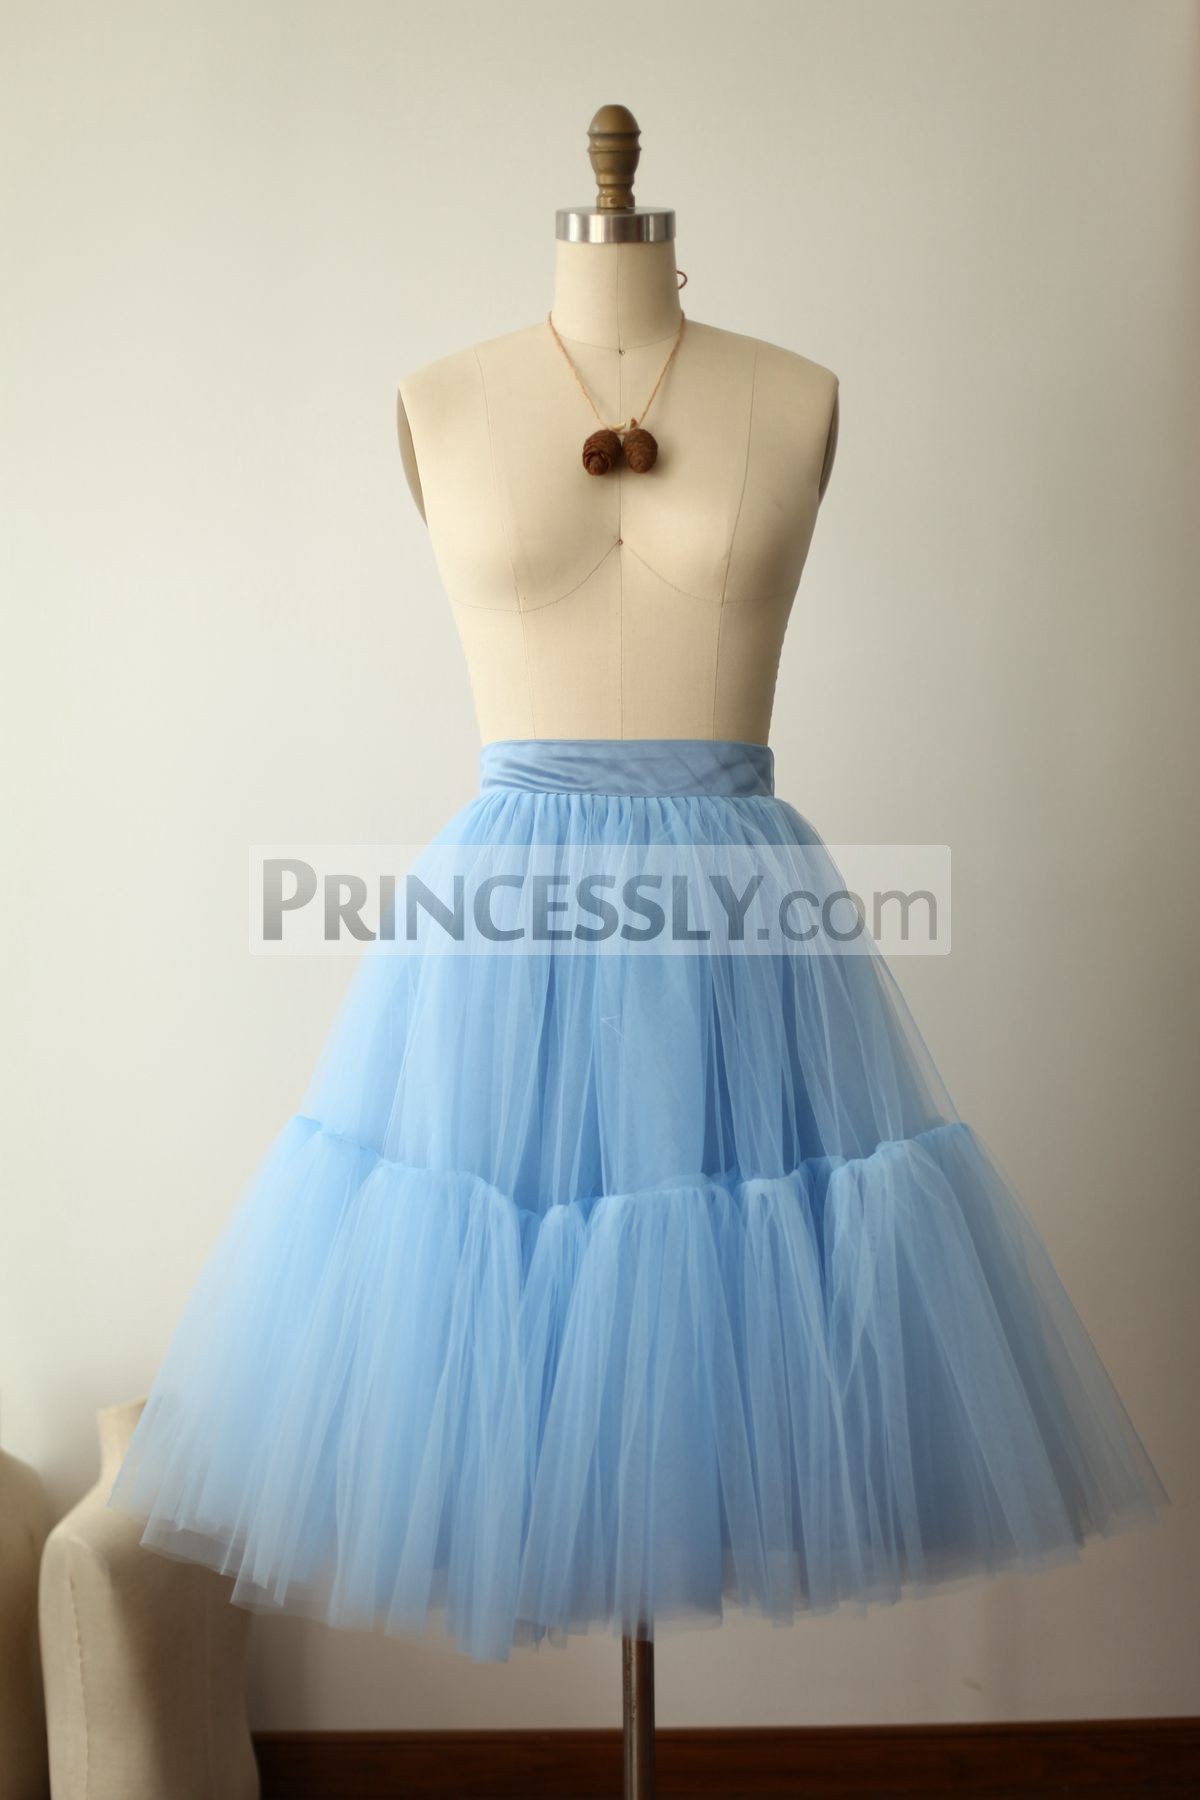 Princessly.com-K1000272-Blue Tulle Skirt/Short Woman Skirt-31